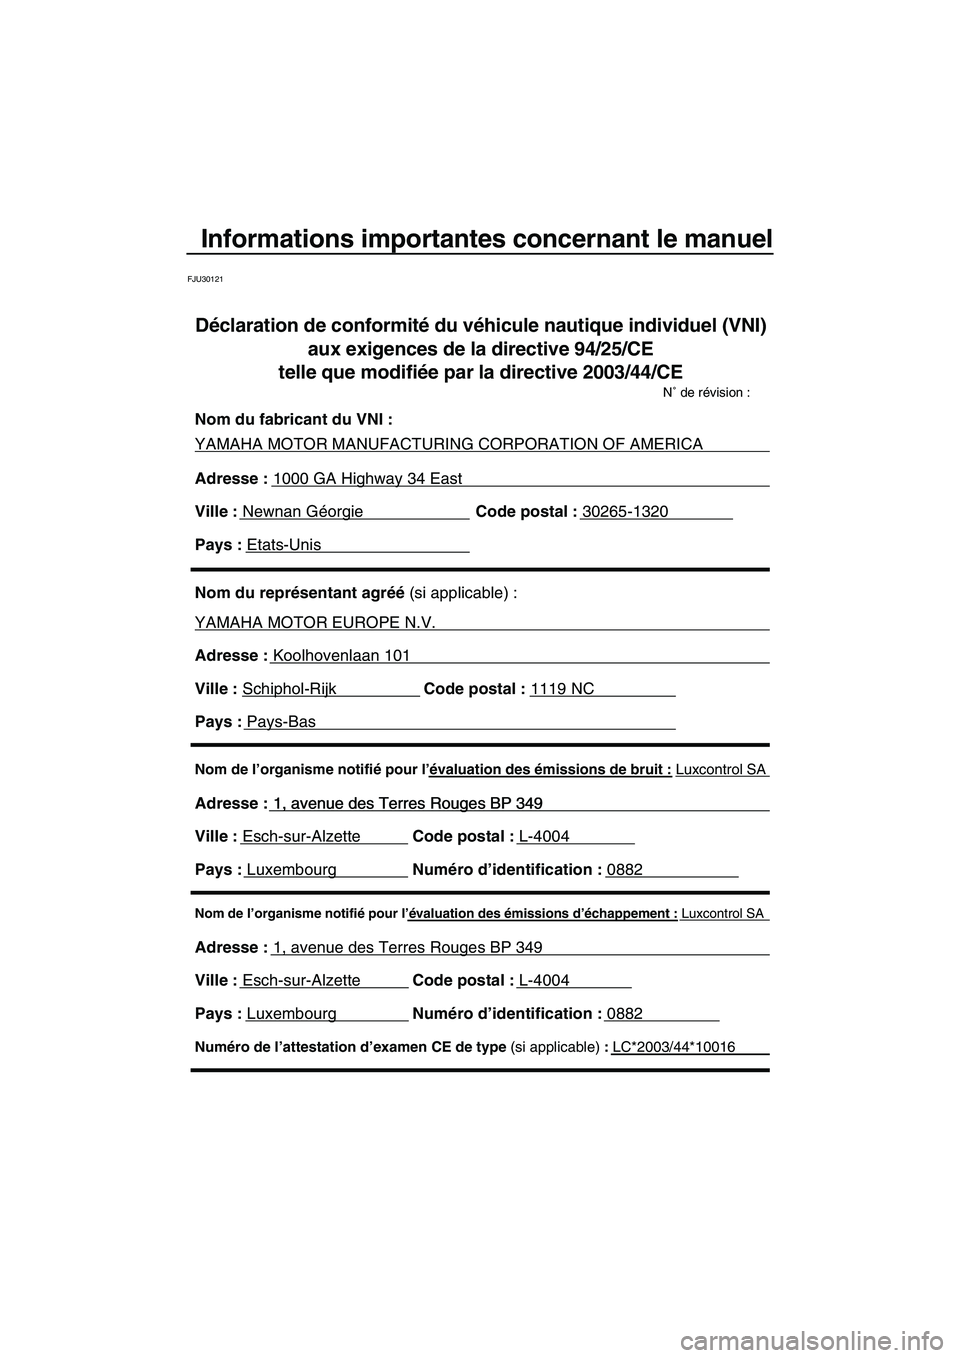 YAMAHA VX SPORT 2007  Notices Demploi (in French) Informations importantes concernant le manuel
FJU30121
Nom de l’organisme notifié pour l’évaluation des émissions d’échappement : Luxcontrol SA
Adresse : 1, avenue des Terres Rouges BP 349 
